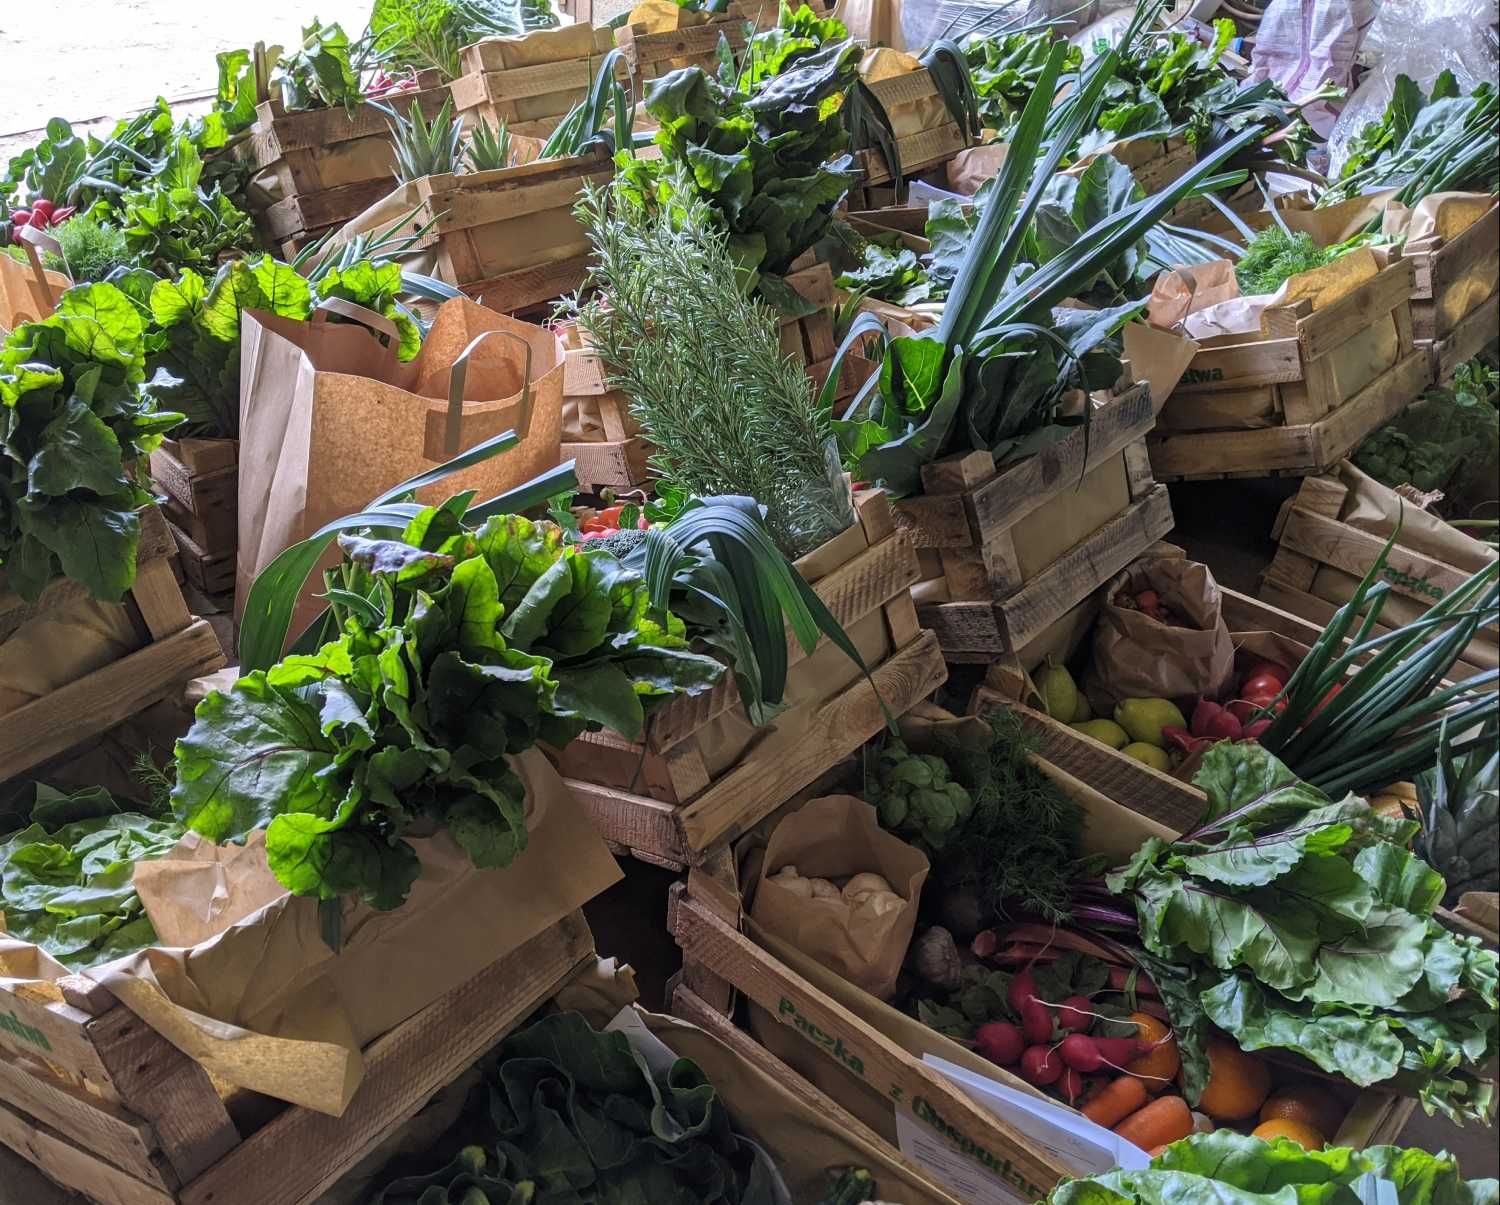 Warzywa i owoce z darmową dostawą - paczka średnia